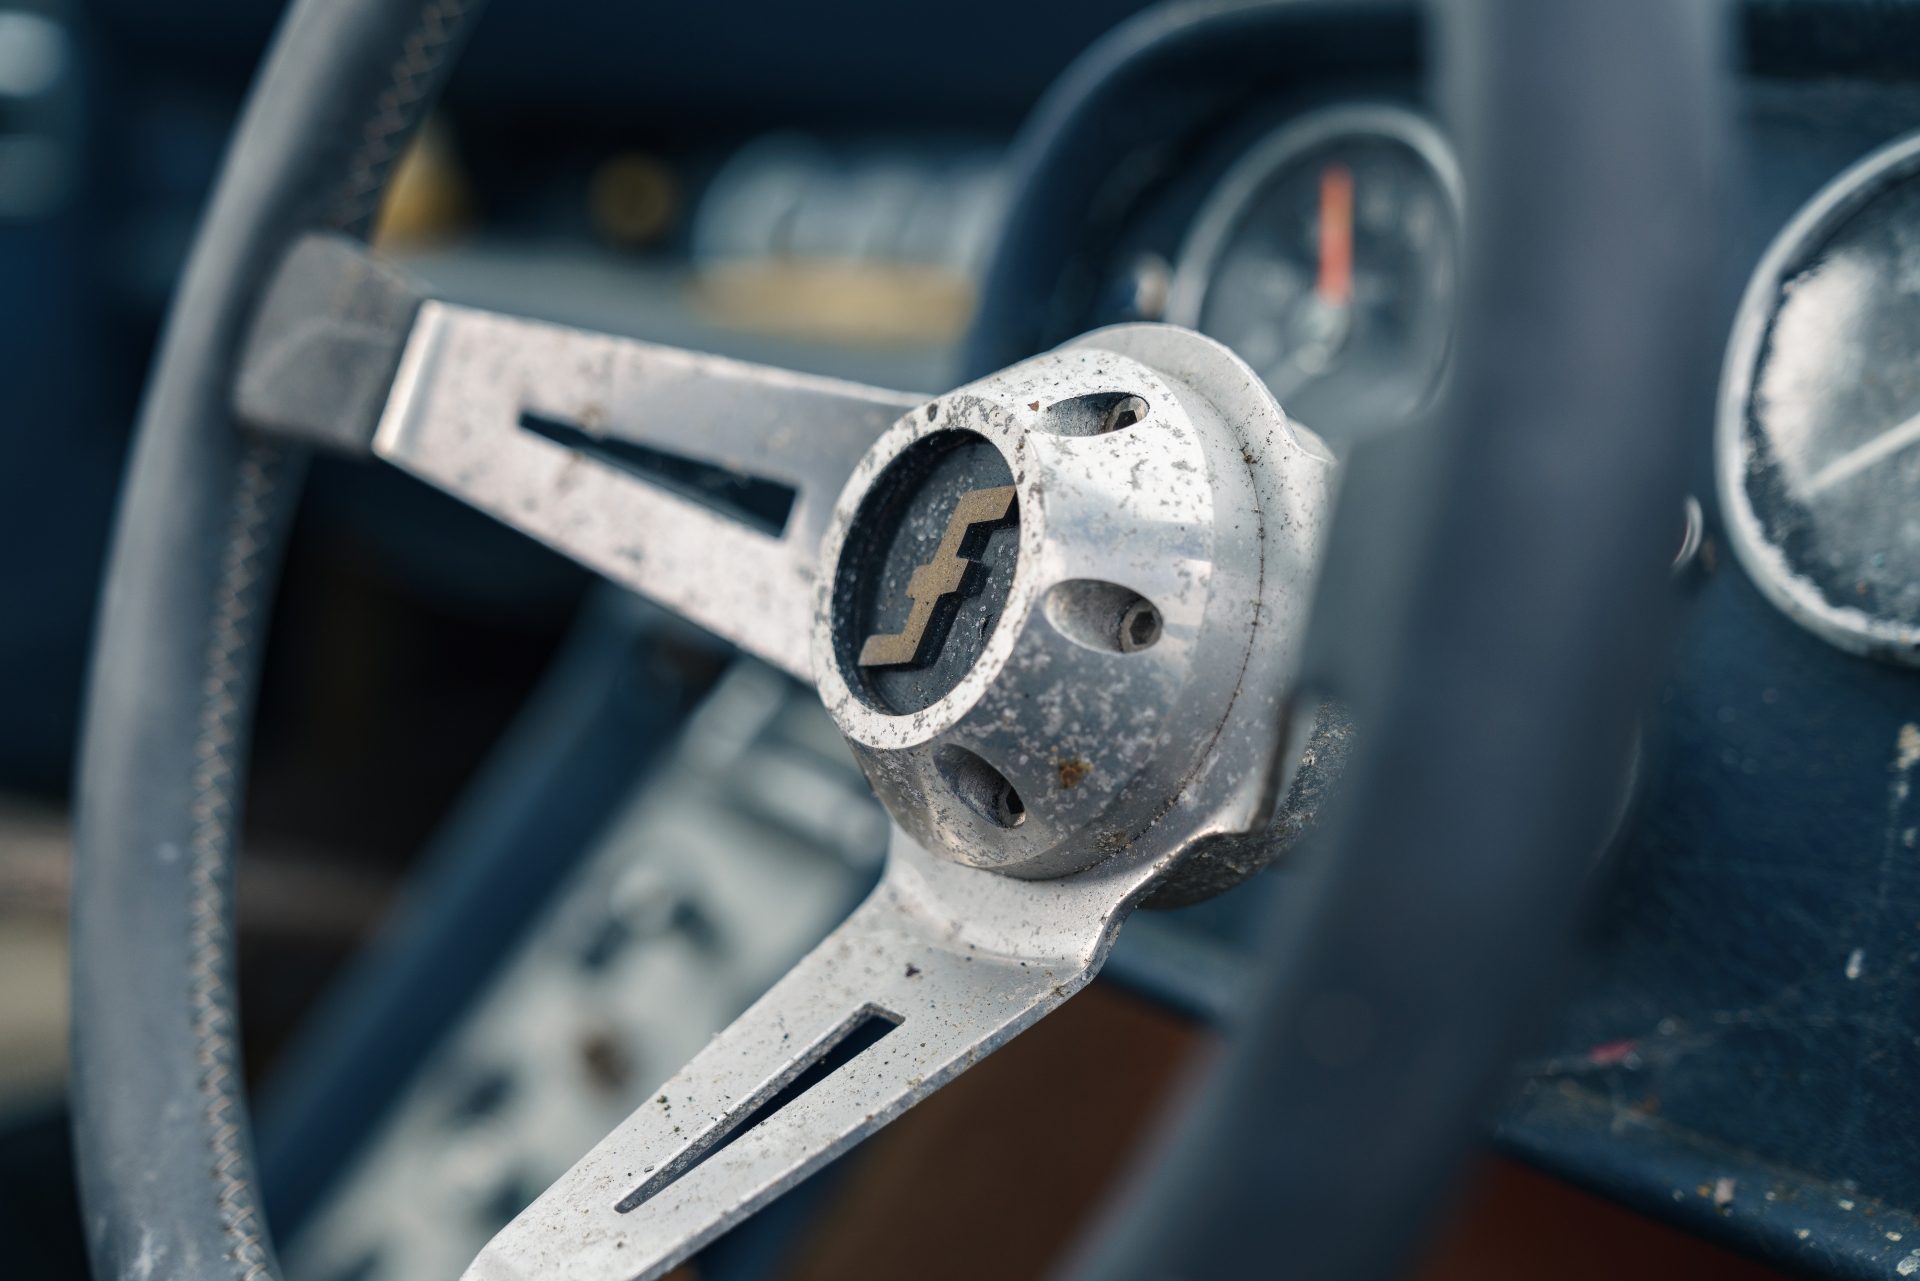 Furia GT steering wheel